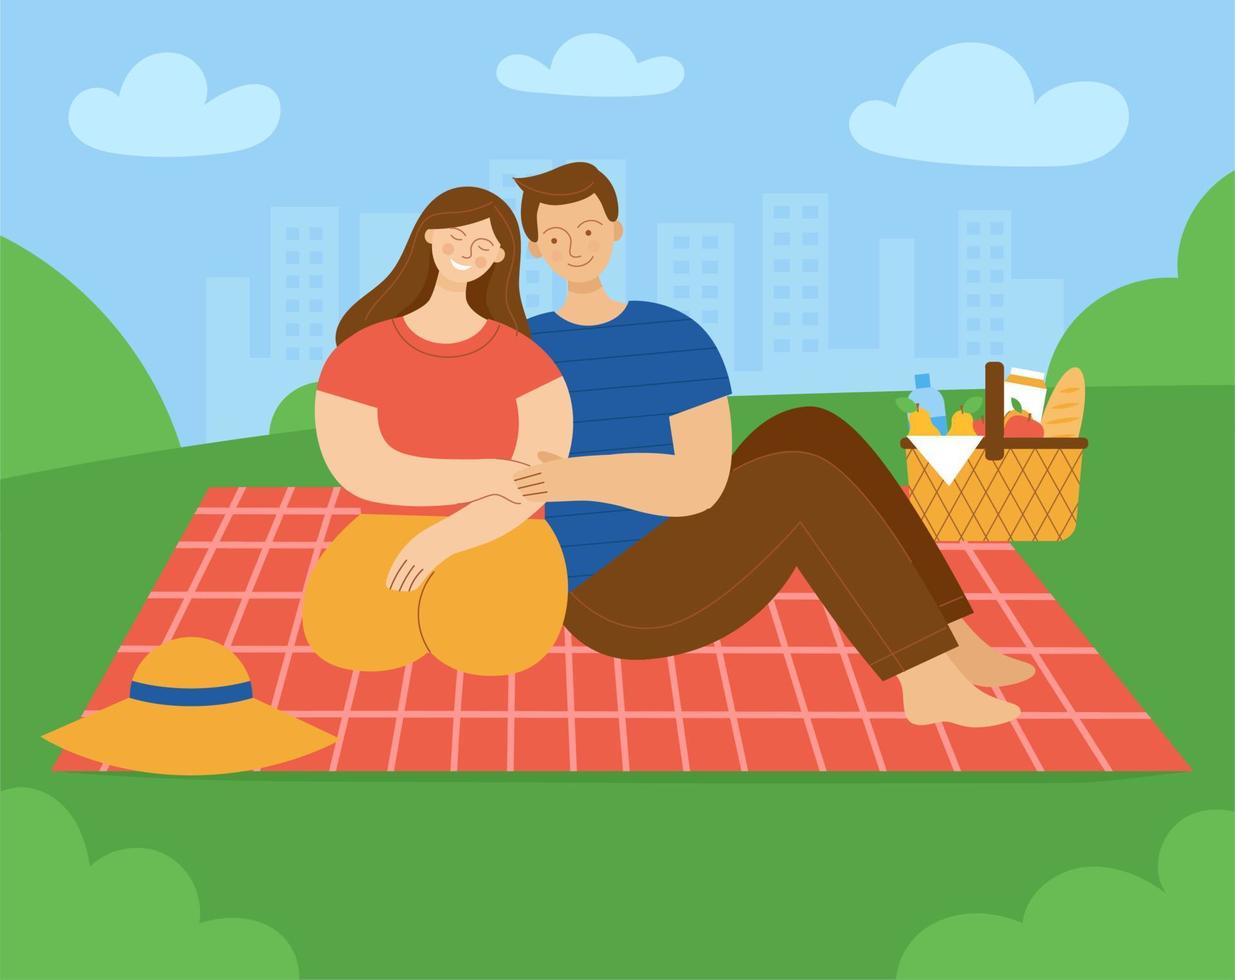 Liebespaar beim Picknick im Park. Mann und Frau sitzen auf Plaid und lächeln. Konzept der Entspannung an einem Wochenende im Frühling oder Sommer. ein familienpaar, ehemann und ehefrau.flache farbvektorillustration. vektor